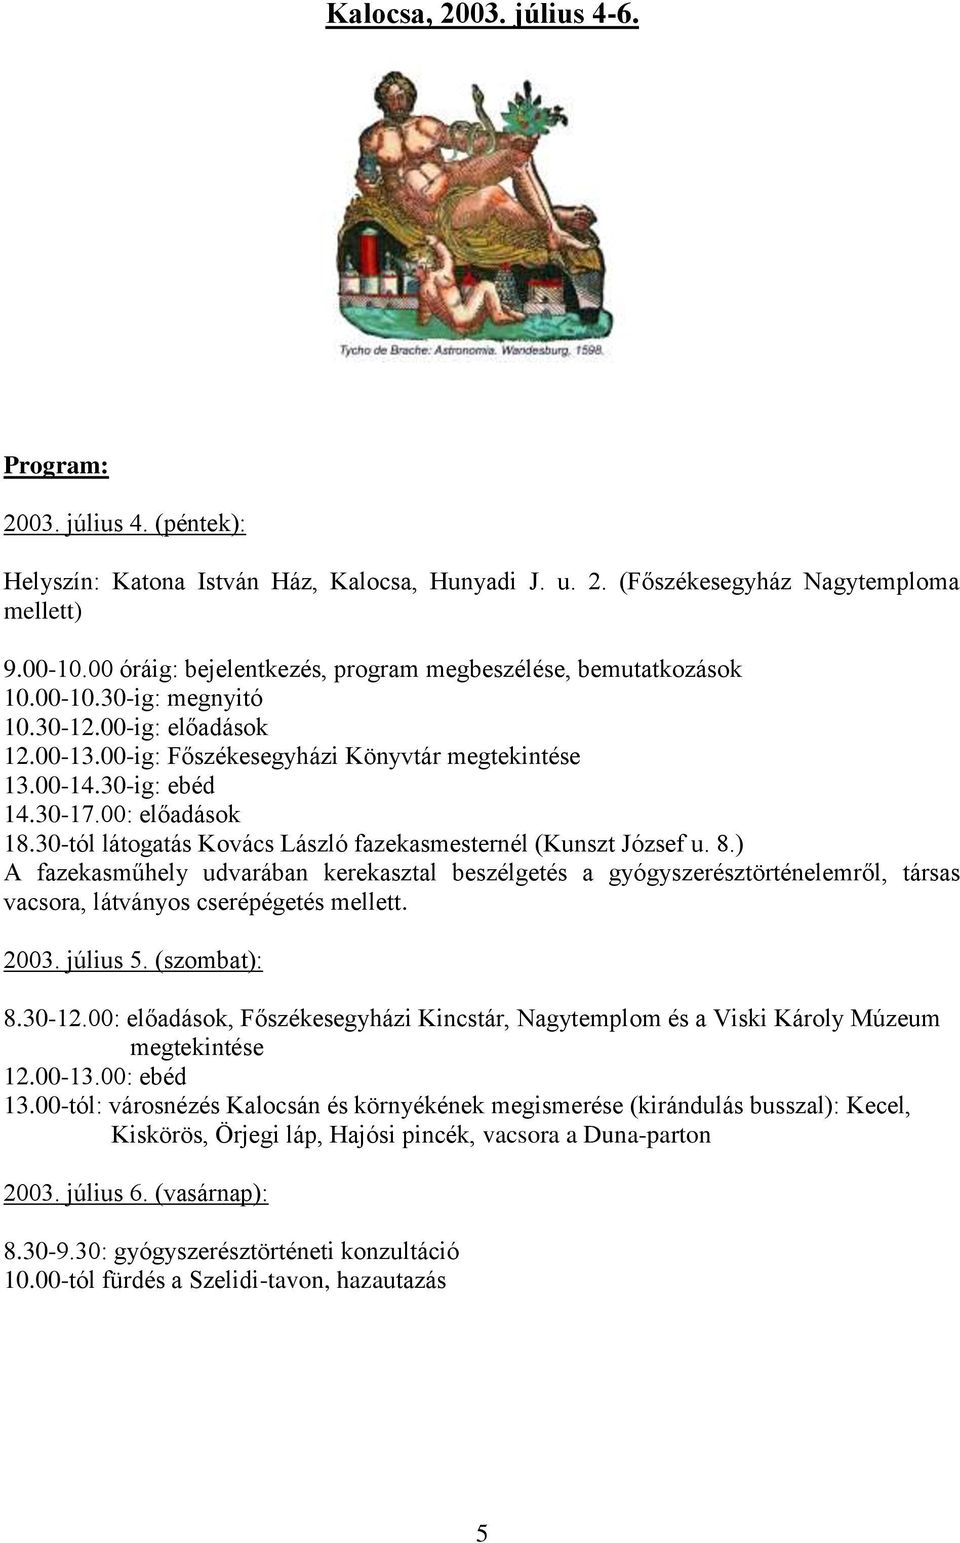 00: előadások 18.30-tól látogatás Kovács László fazekasmesternél (Kunszt József u. 8.